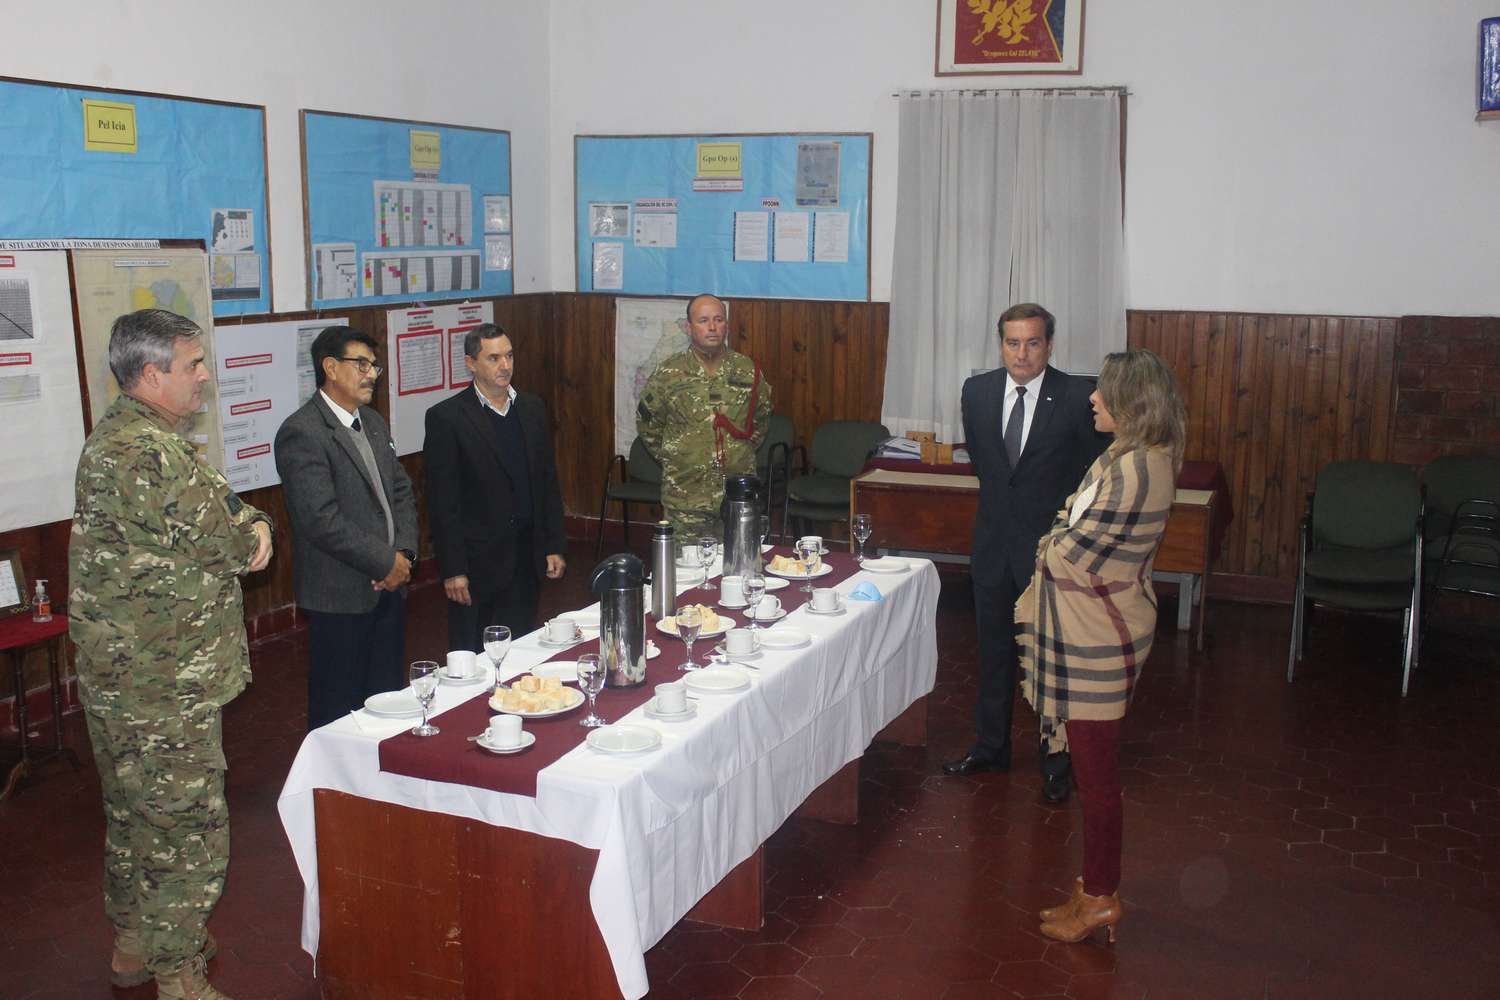 El Regimiento local conmemoró un nuevo aniversario del Ejército Argentino